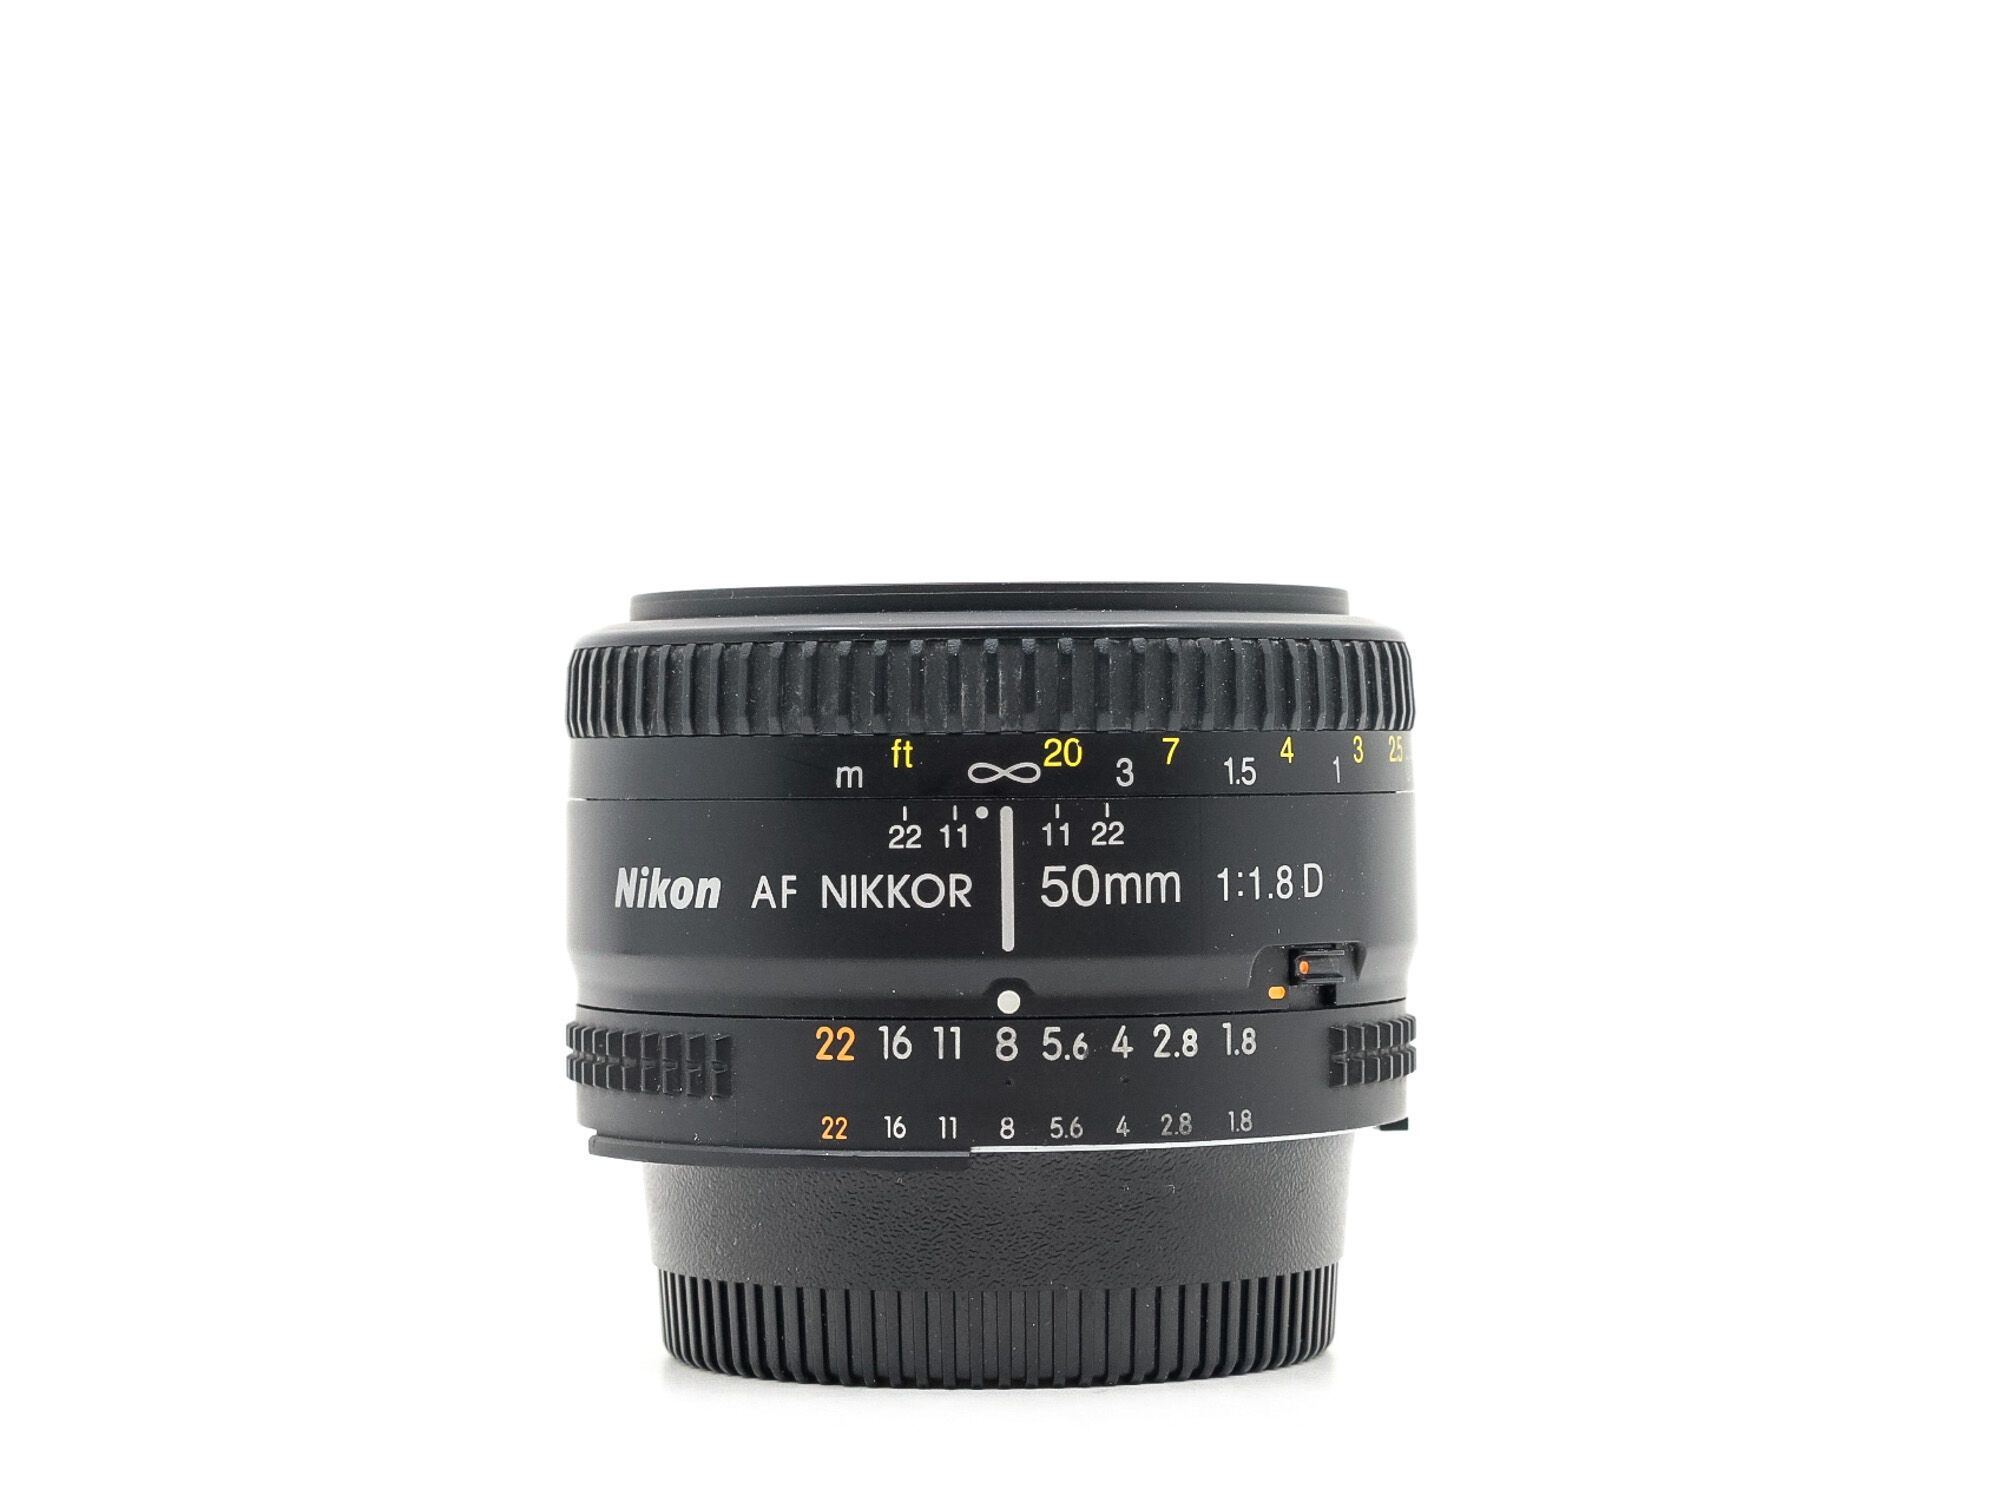 Nikon AF Nikkor 50mm f/1.8D (Condition: Good)